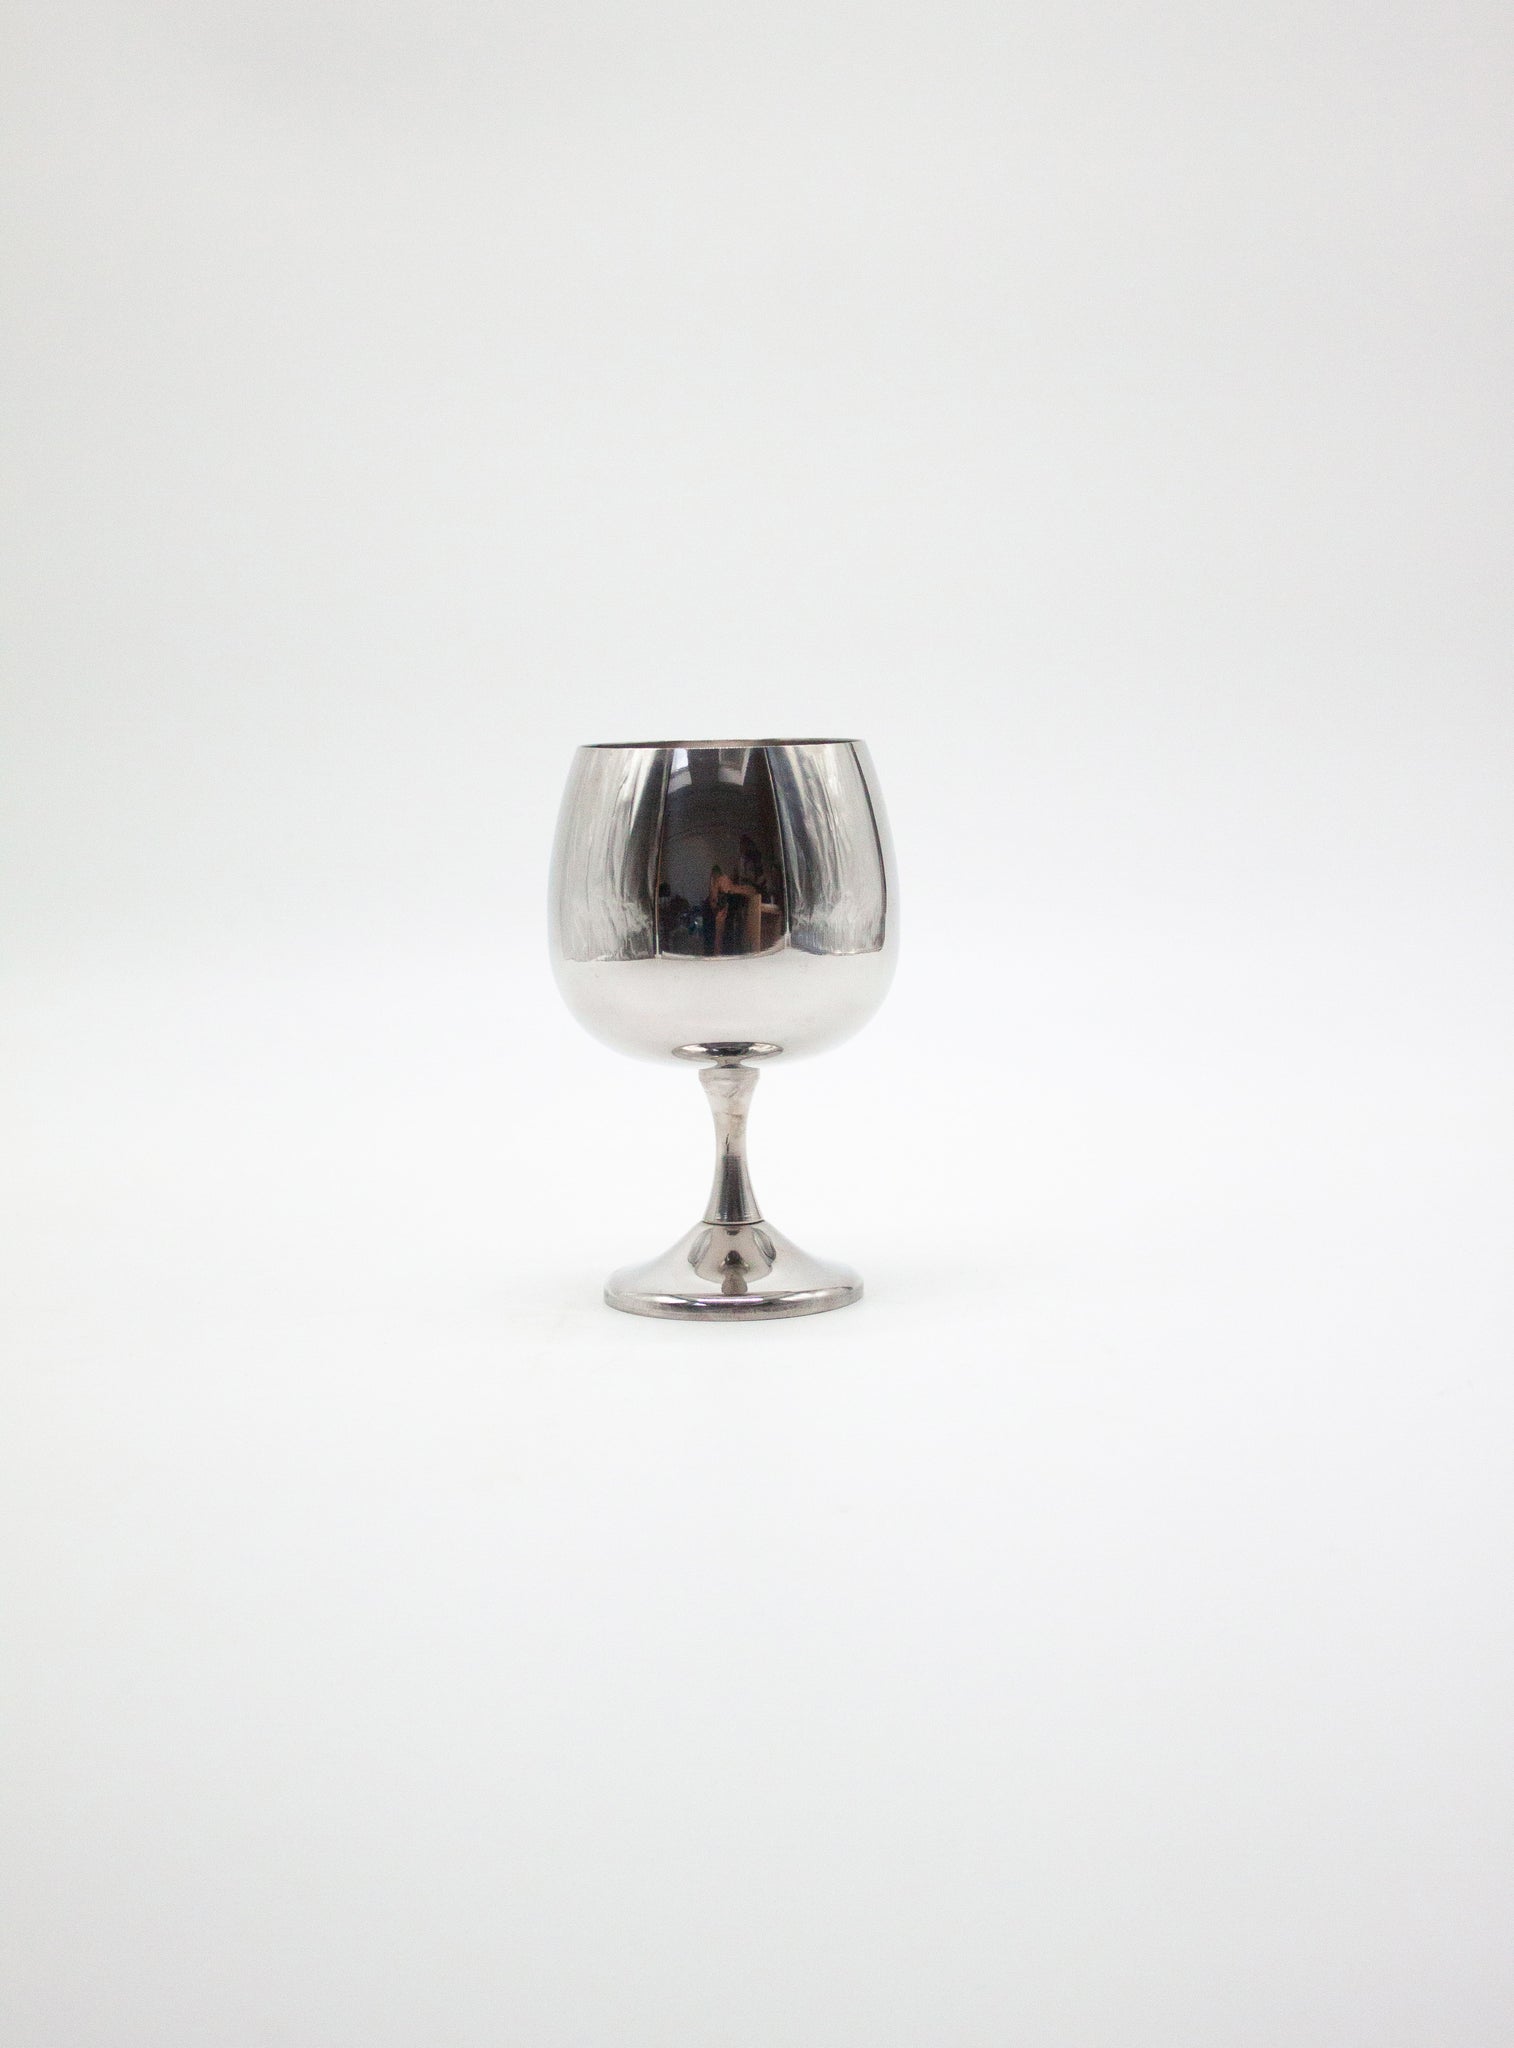 AMC Italy Stainless Steel Wine Glasses art. 2057 (6 pcs)